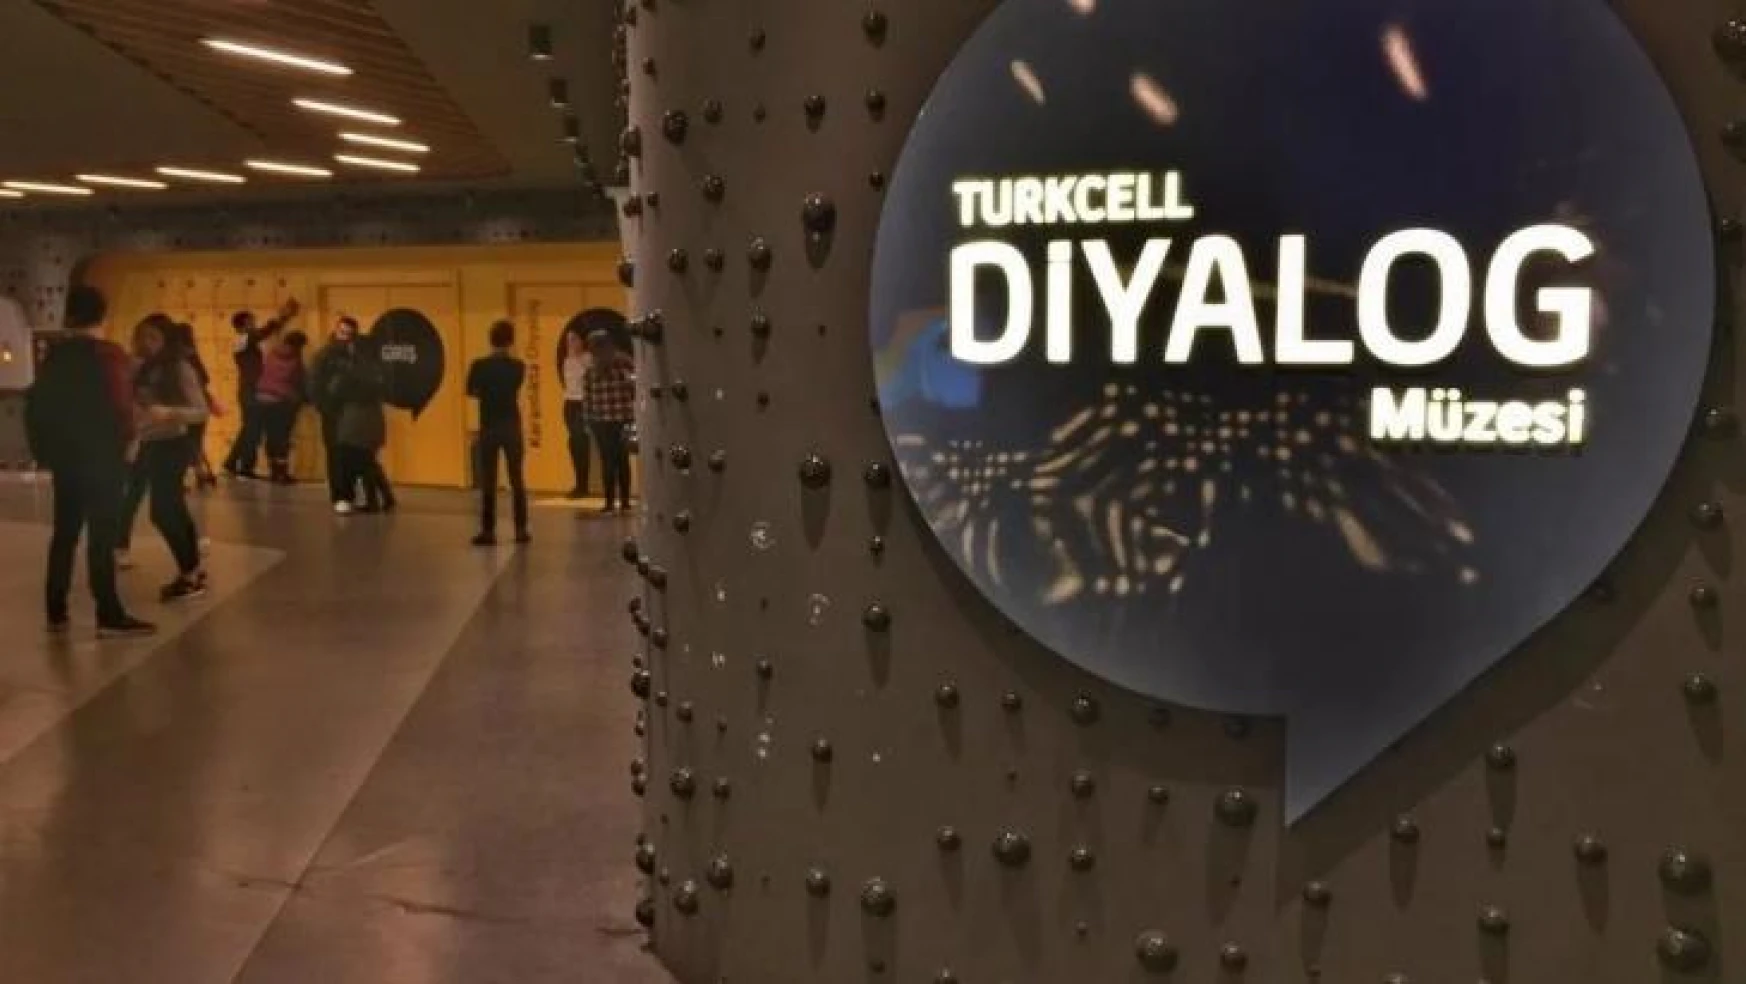 Turkcell Diyalog Müzesi'nde ziyaretçi sayısı yarım milyona ulaştı